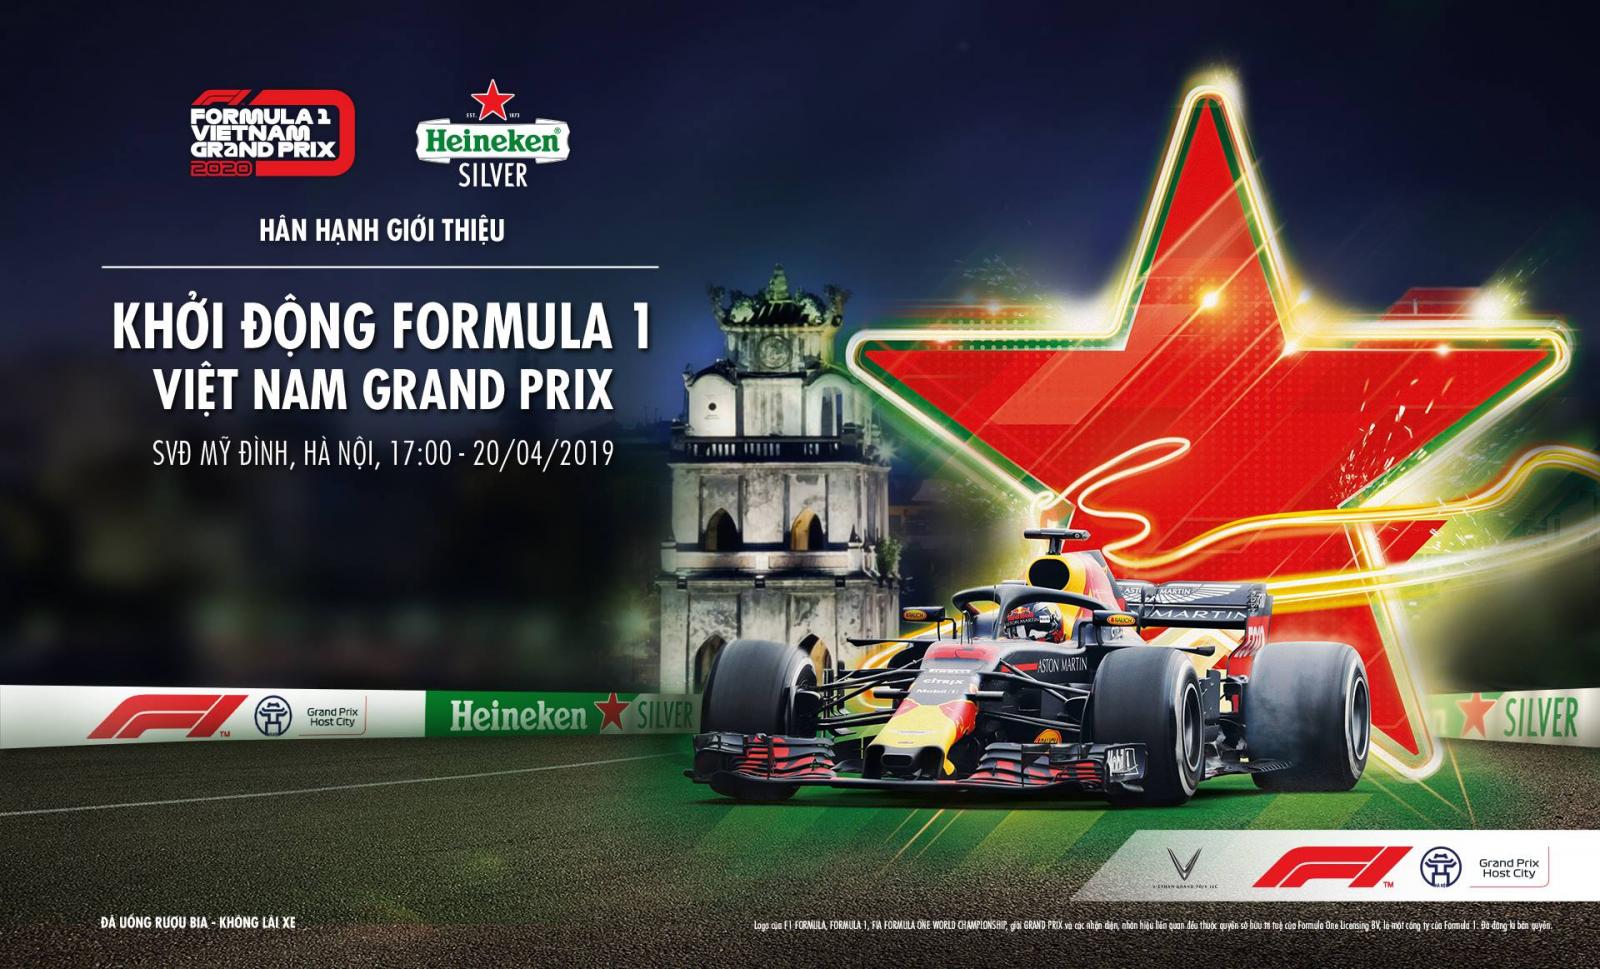 Sự kiện "Khởi động Formula 1 Việt Nam Grand Prix" sẽ diễn ra vào tối 20/4/2019.